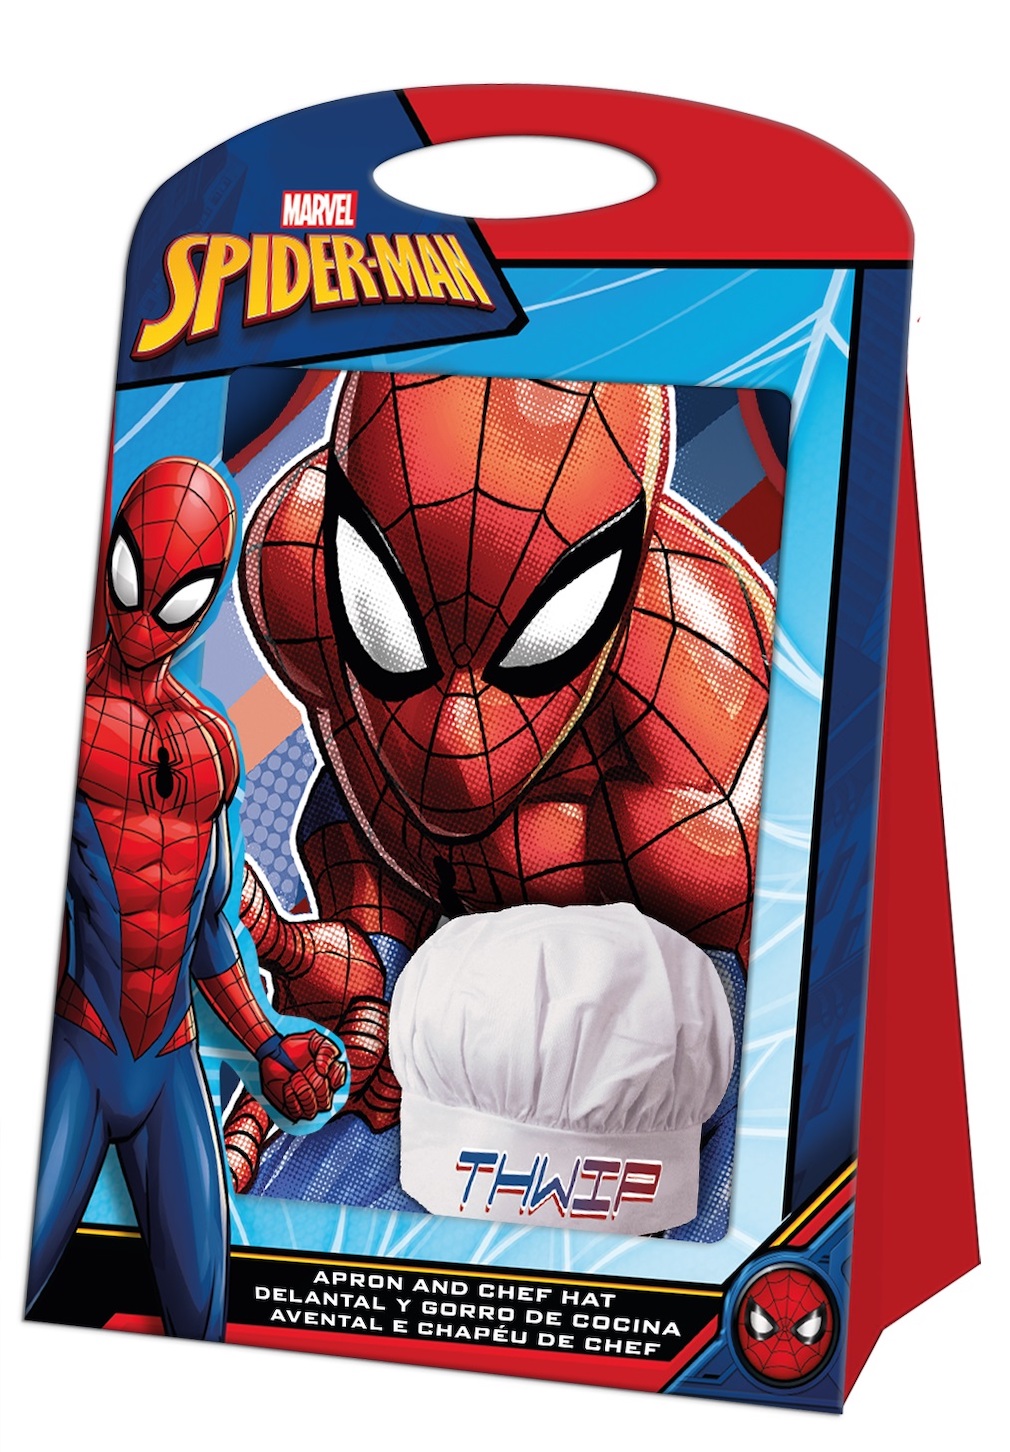 Spiderman Kochset Schürze Mütze Spider-Man Chefkoch